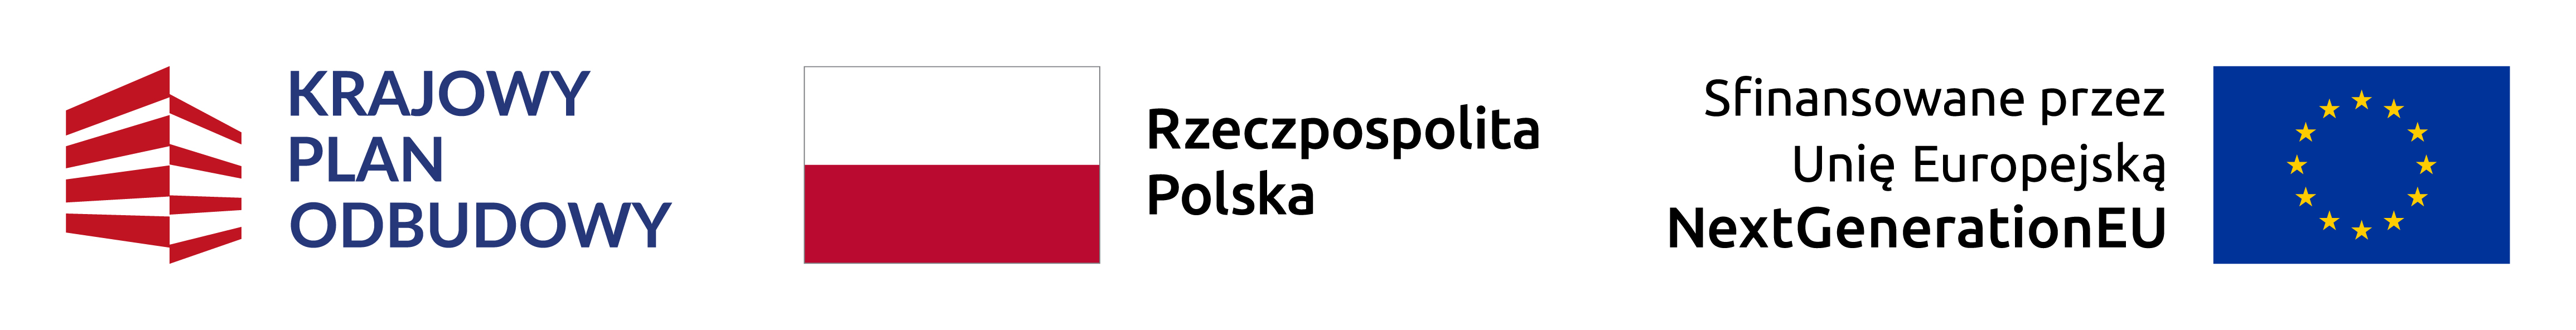 Logotyp Krajowego Planu Odbudowy, flaga Polski, flaga Unii Europejskiej z tekstem Sfinansowane przez Unię Europejską NextGenerationEU